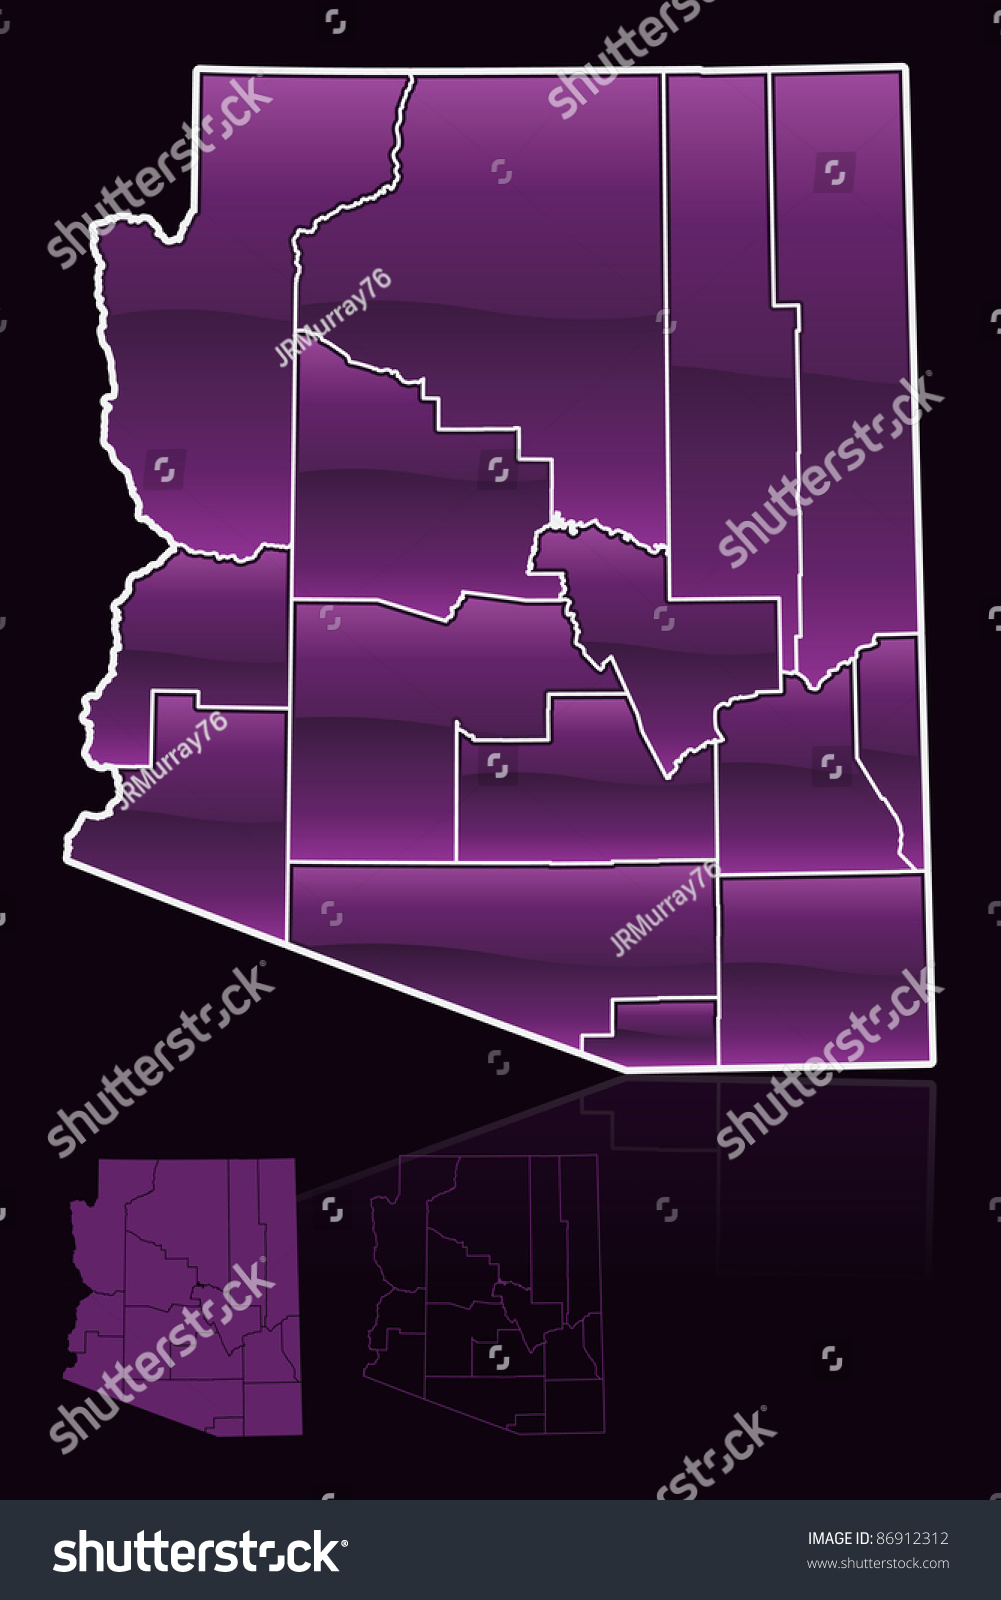 Counties Arizona Map Cartoon Vector Graphic Image Vectorielle De Stock Libre De Droits 8508